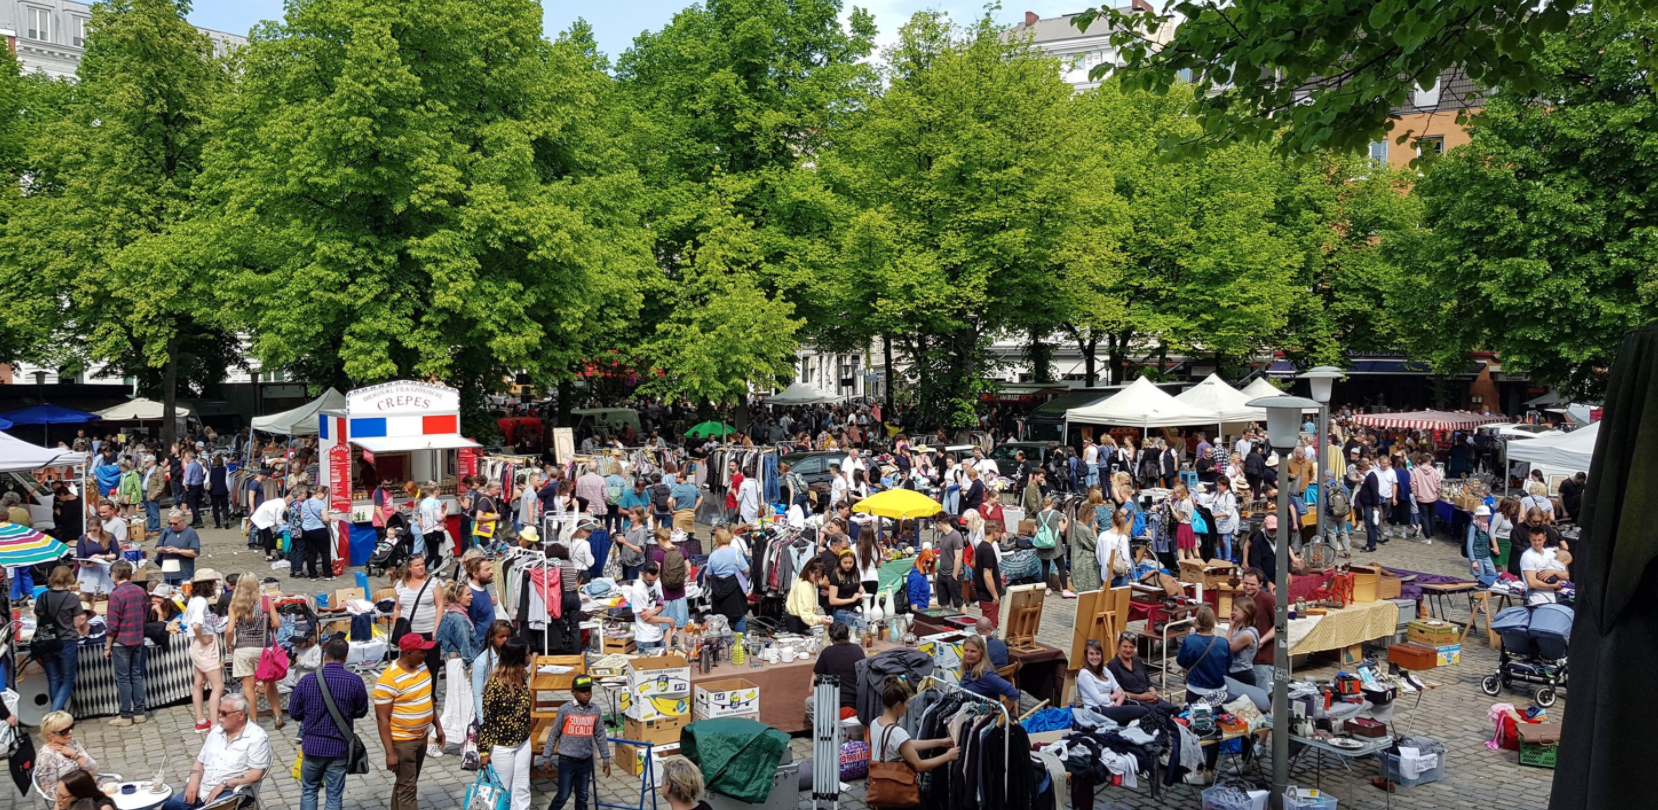 Sonntag ist Flohmarkt-Tag! Heute kannst du am Großneumarkt schöner trödeln.